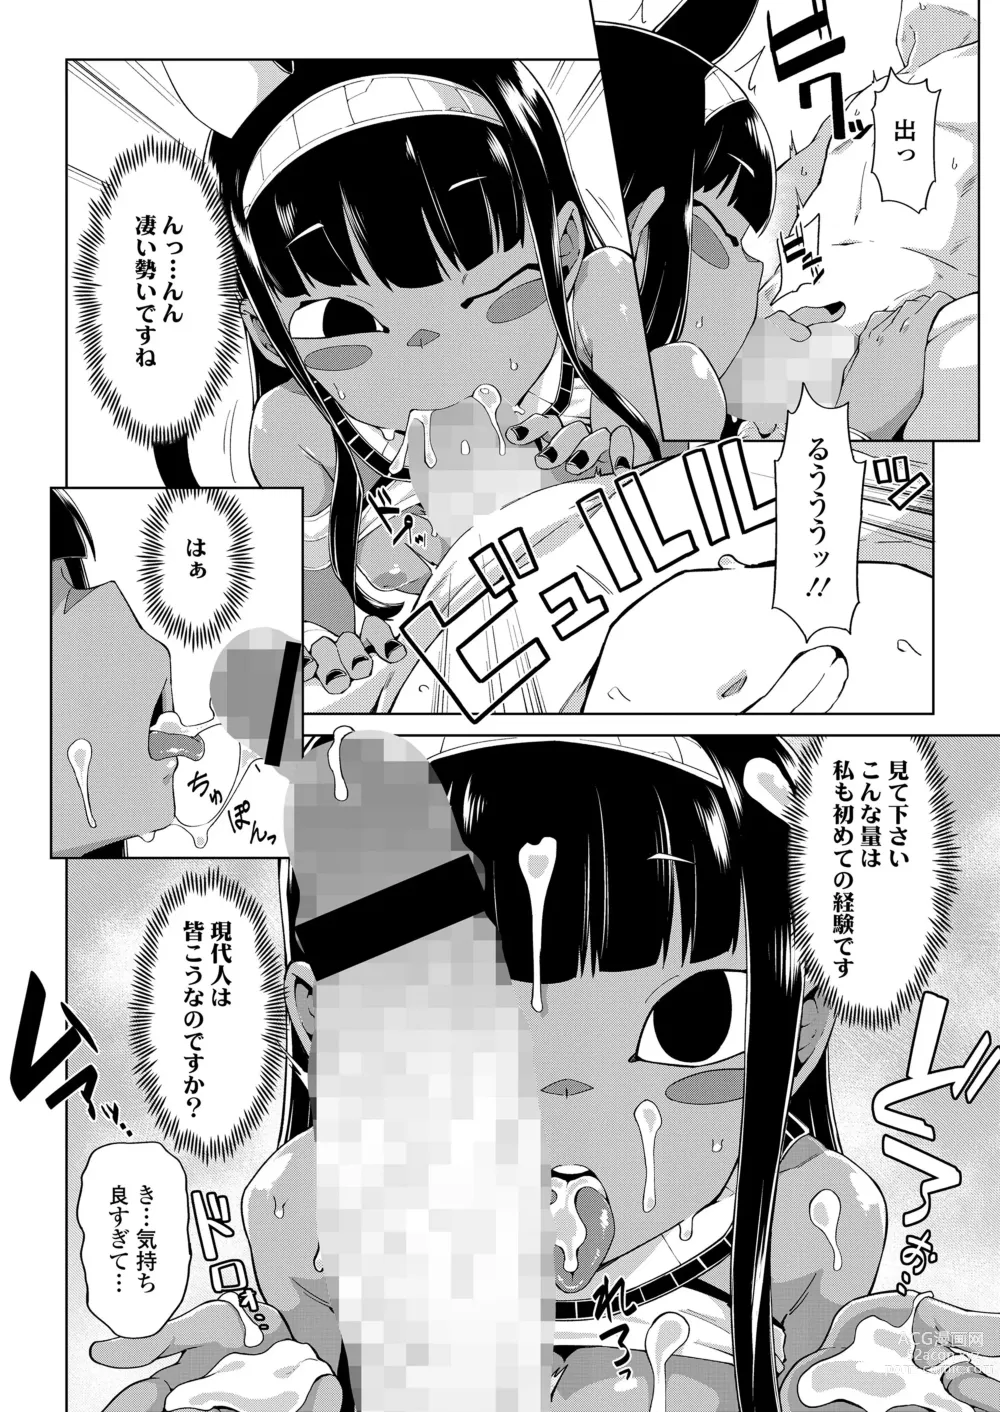 Page 14 of manga Towako Oboro Emaki 13